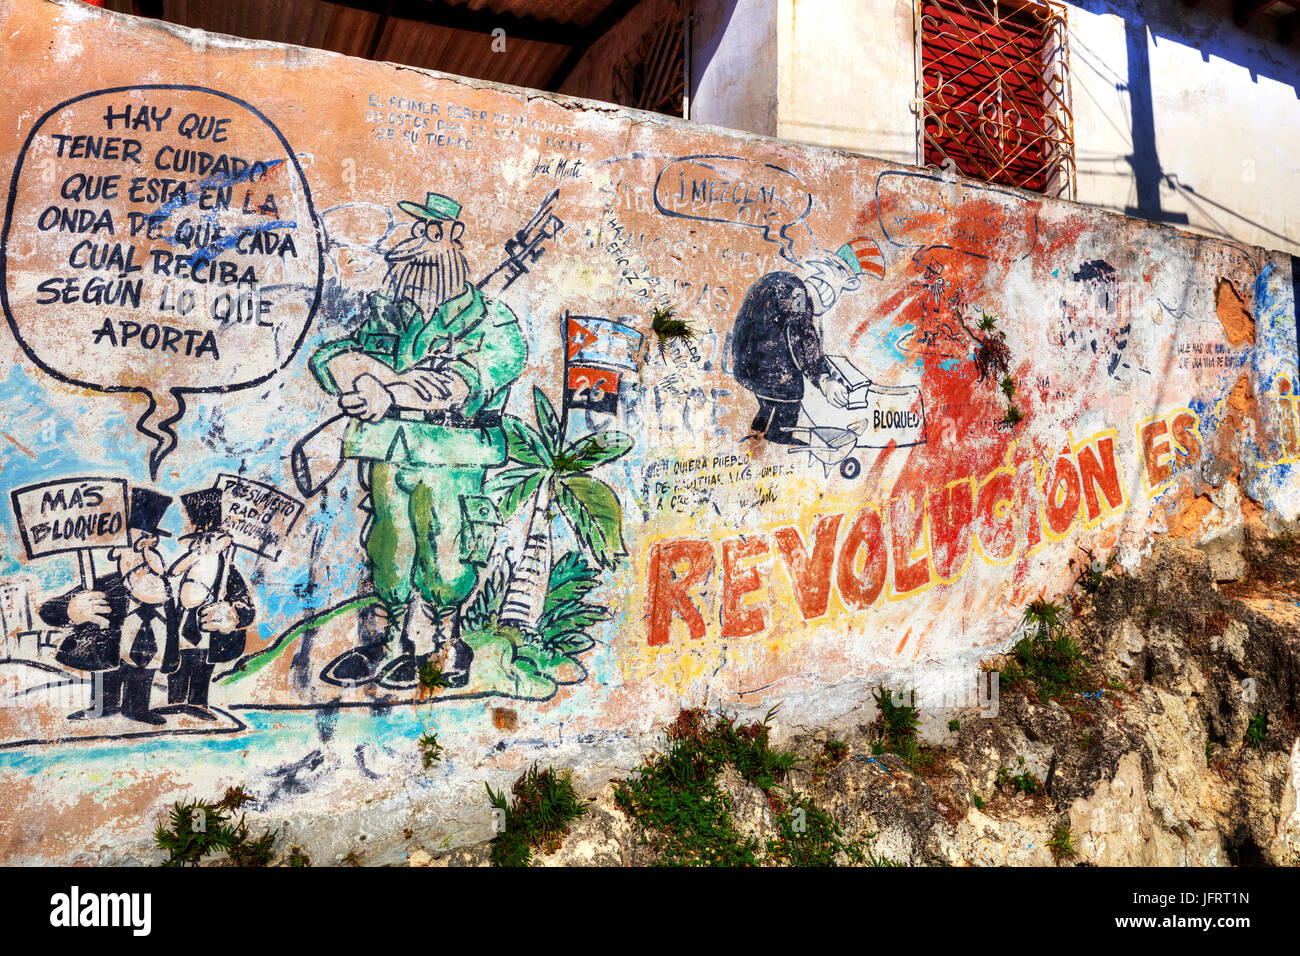 La propagande cubaine cubain, Fidel Castro, Graffiti Graffiti, la révolution cubaine, revolucion cubaine, Cuba, graffiti, l'art de mur, le cubain, Fidel Castro, la propagande Banque D'Images